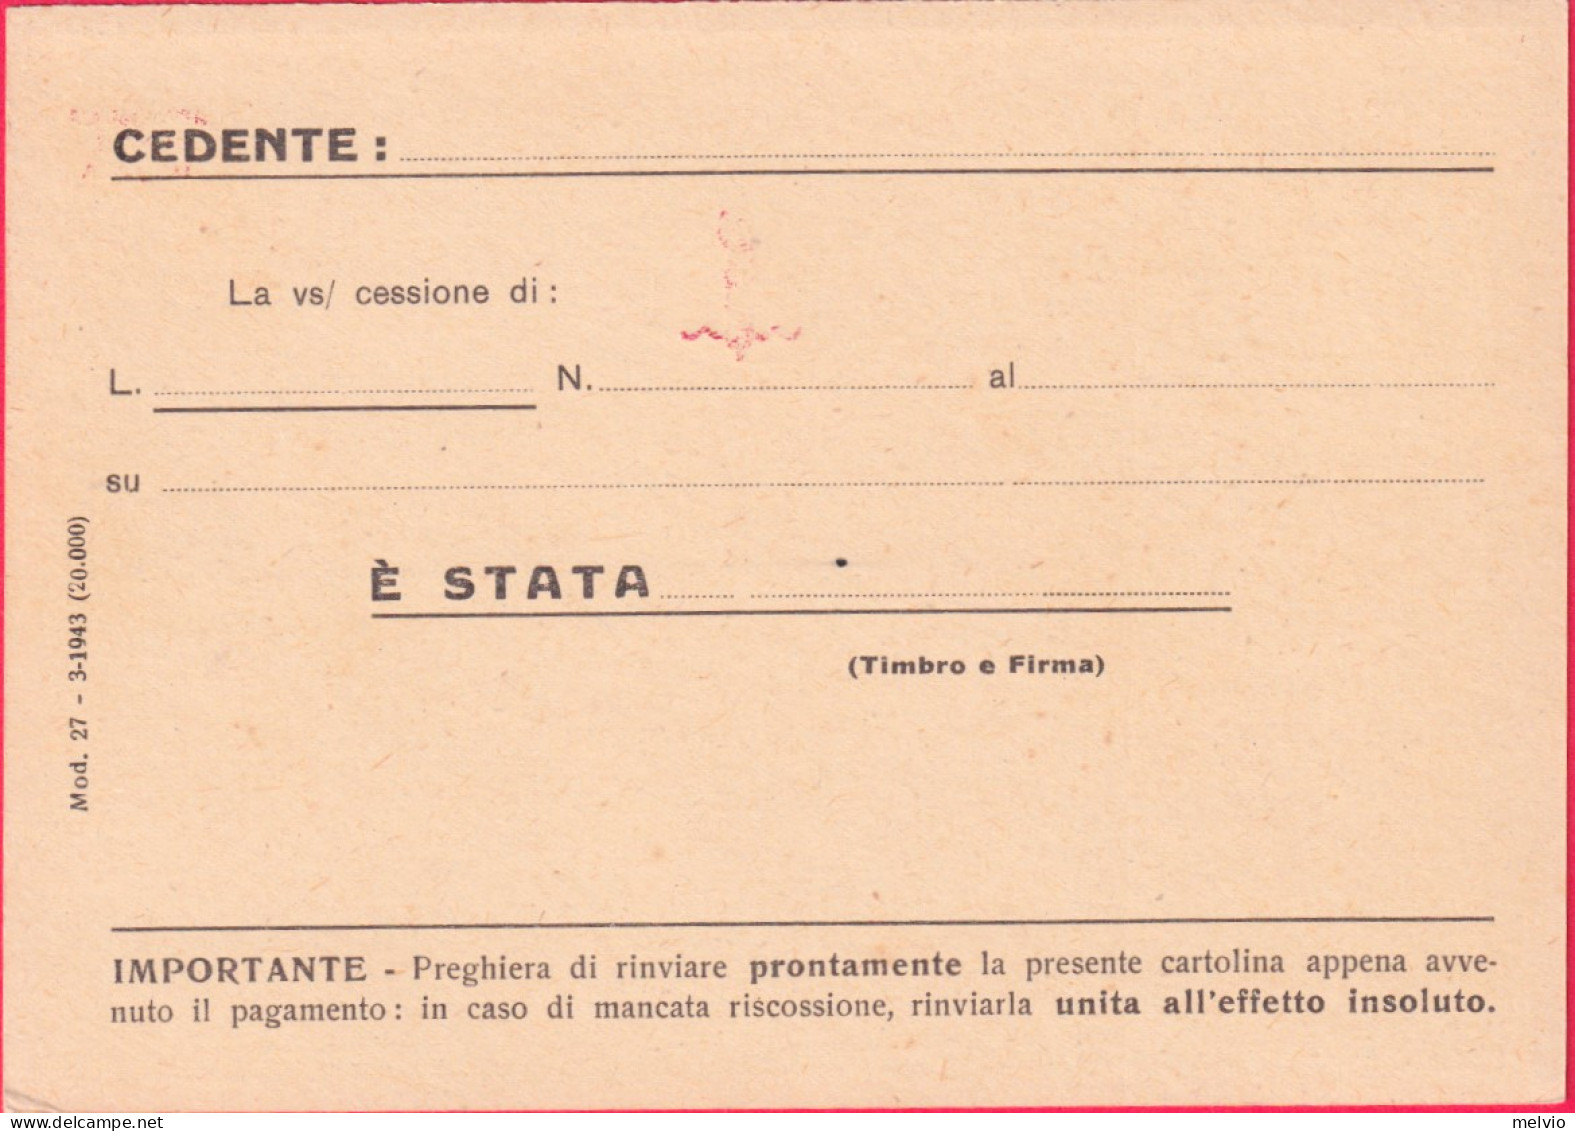 1944-RSI Cartolina Postale Vinceremo C.30 Sopr.RSI E Sopr.privata Banca Provinci - Stamped Stationery